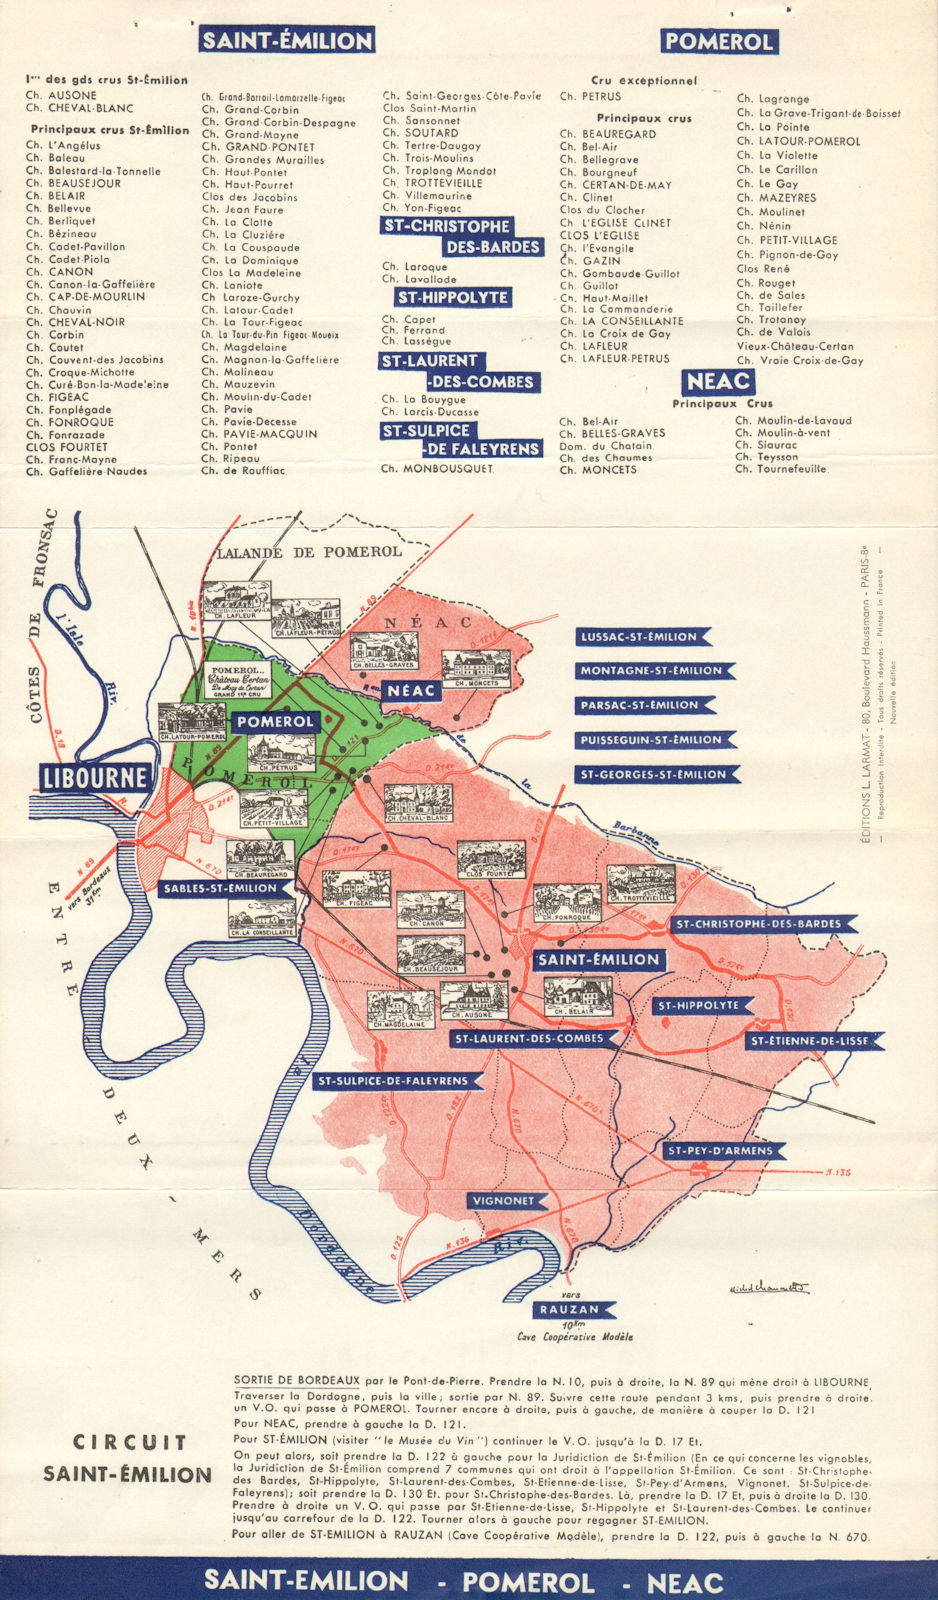 BORDEAUX WINE TOURING MAP. Saint-Emilion - Pomerol - Neac. LARMAT c1947